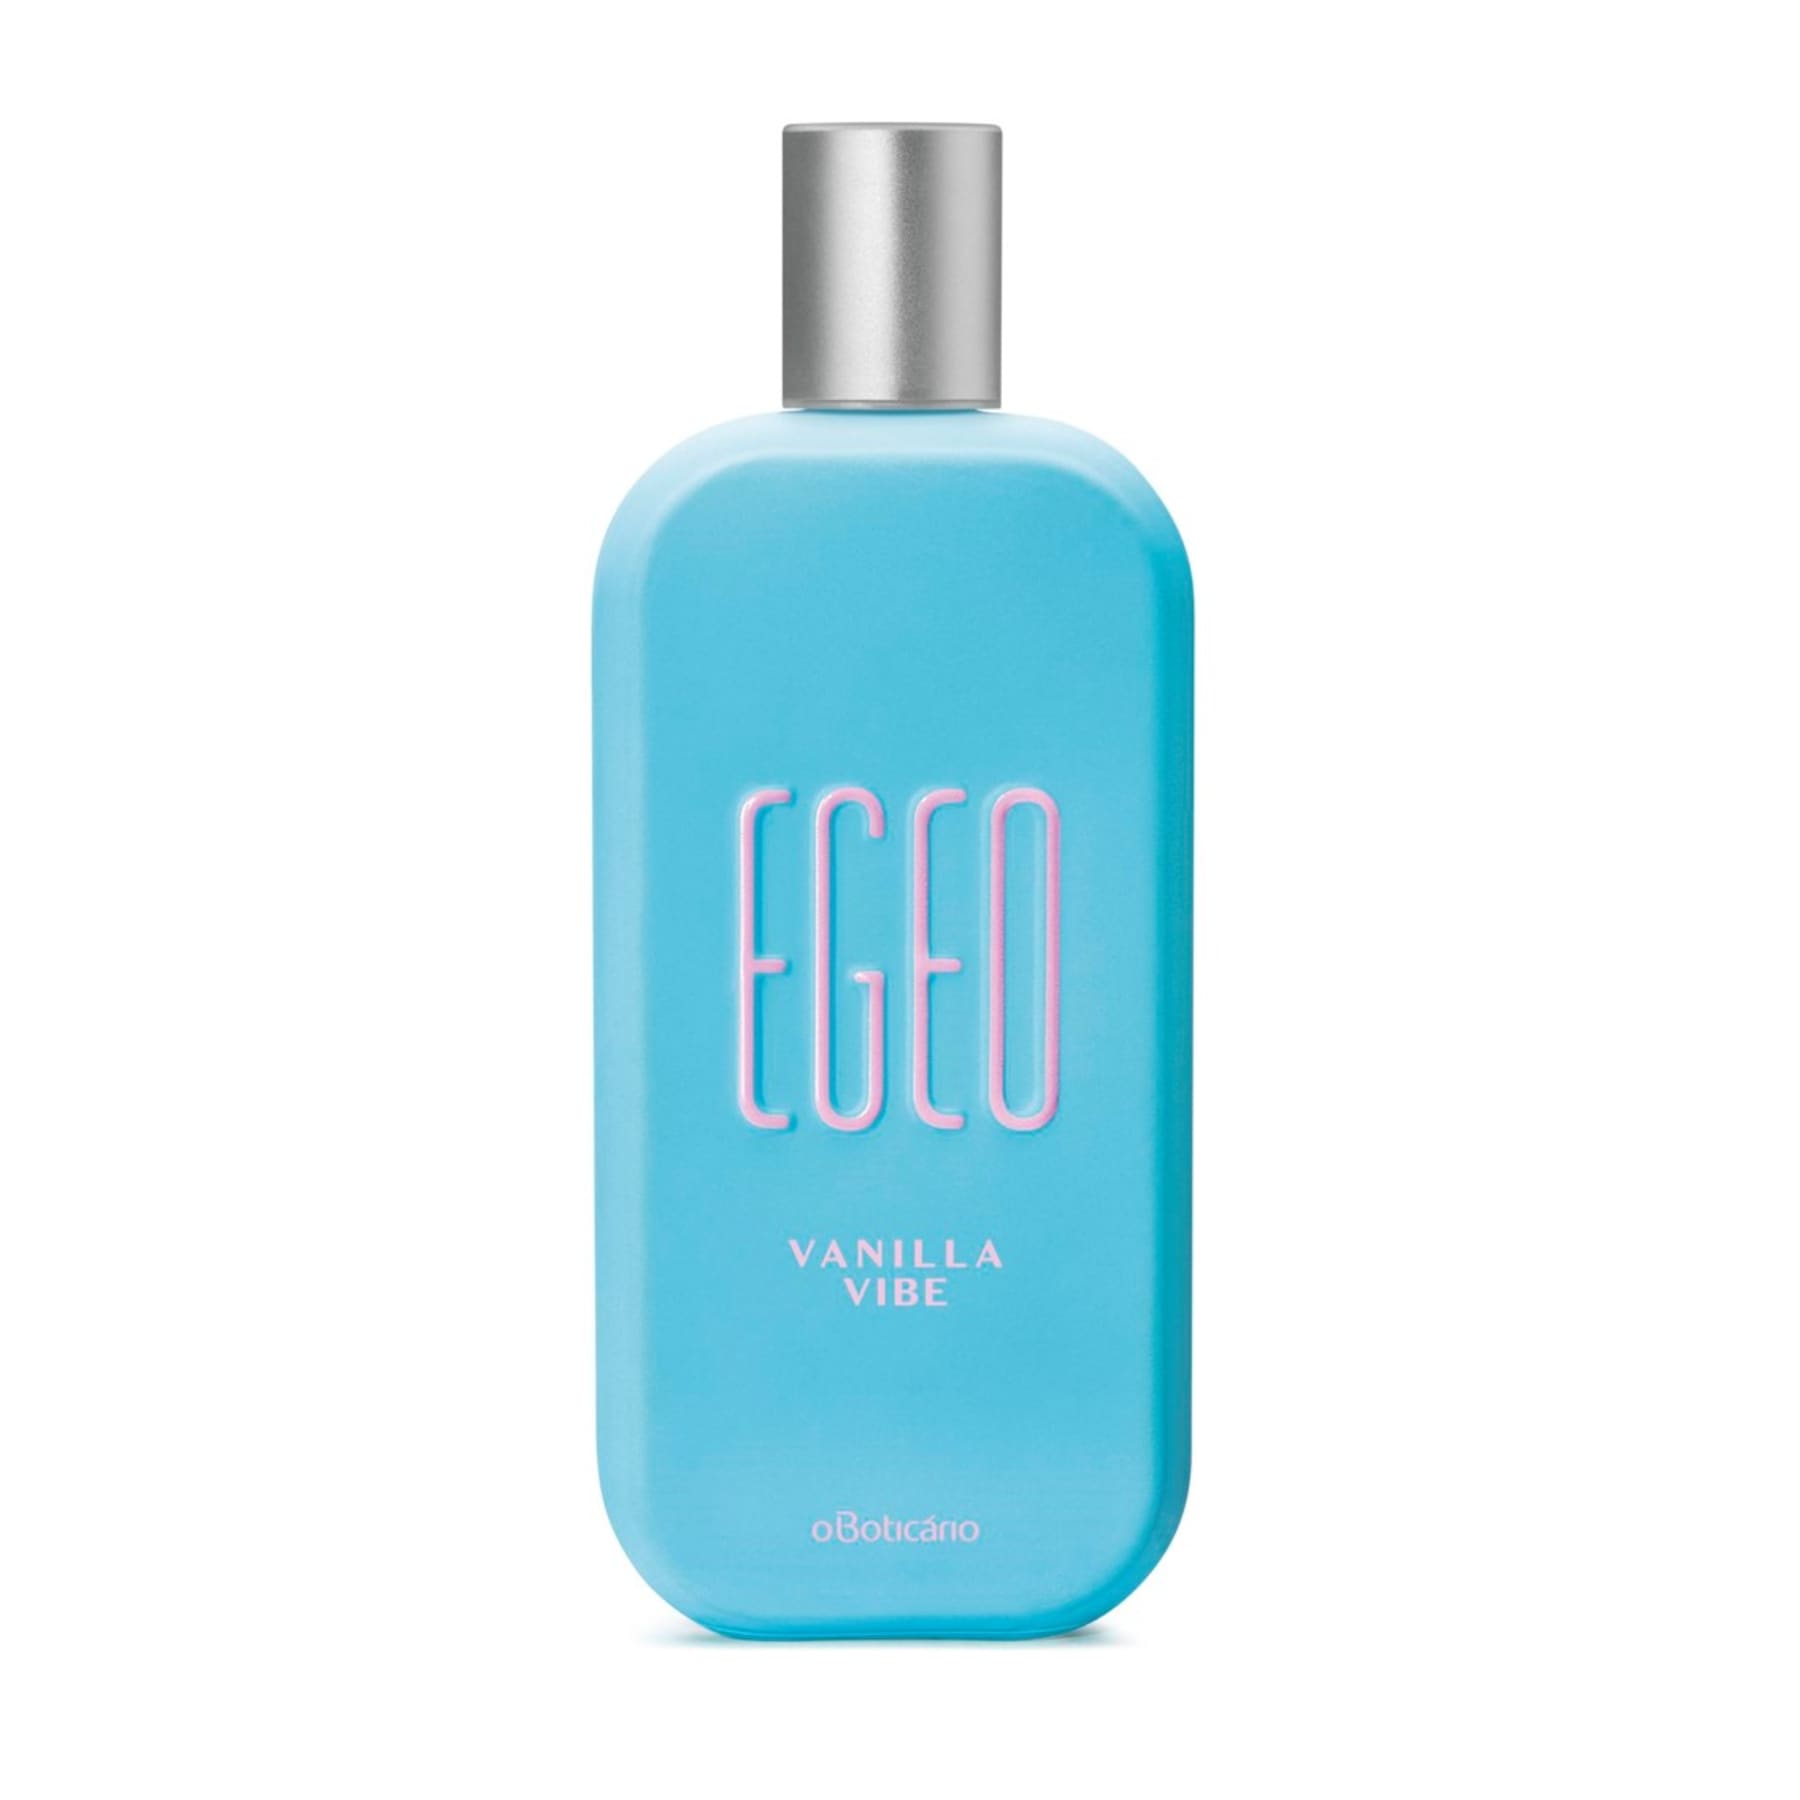 Egeo Vanilla Vibe Deodorant Cologne 90ml - o Boticario